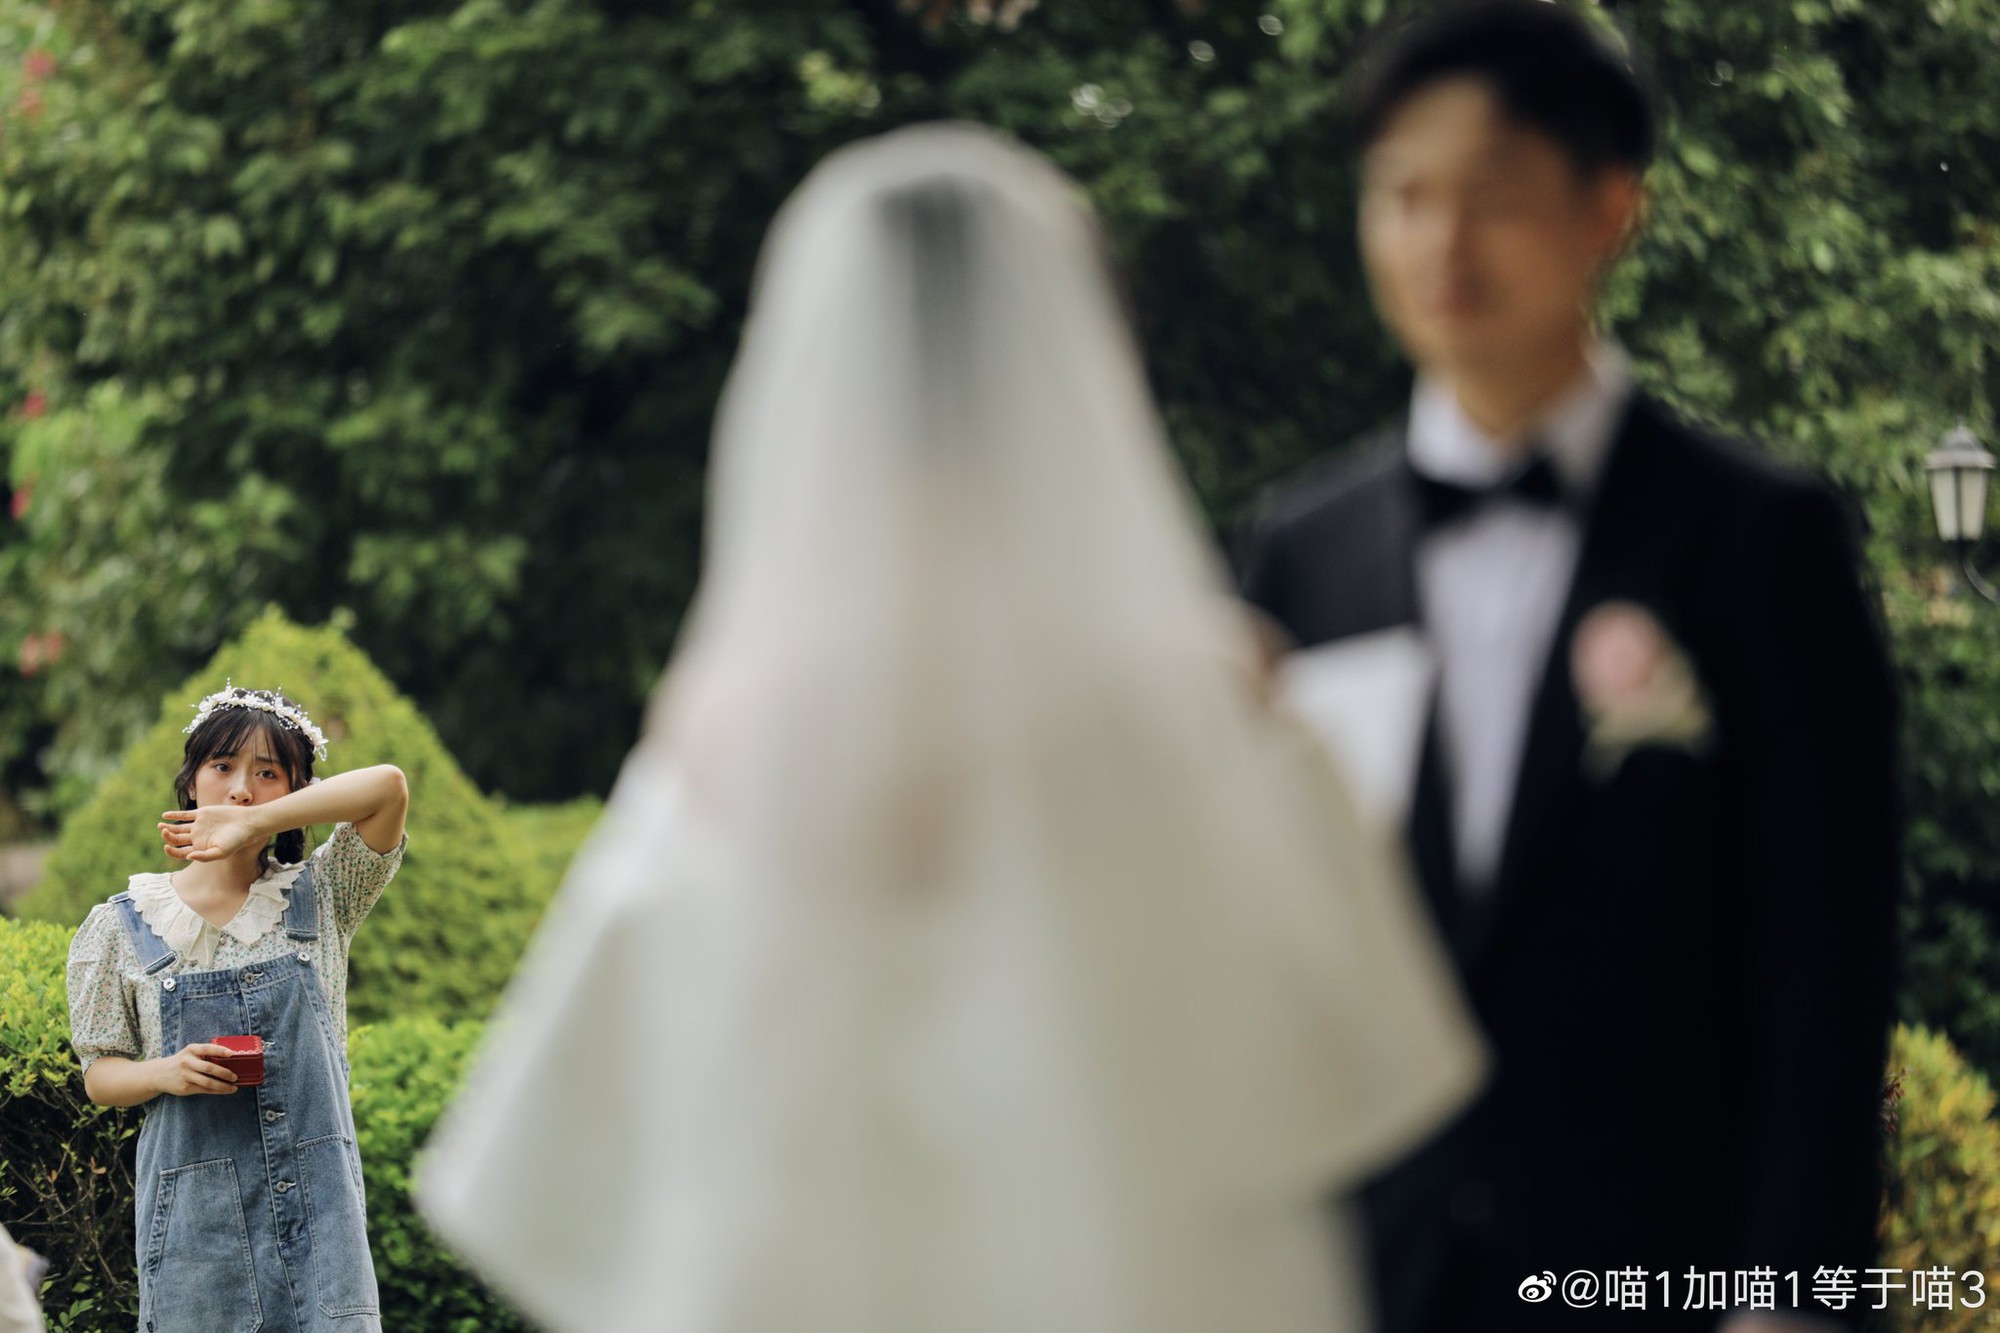 Thẩm Nguyệt (Vườn Sao Băng) biến hôn lễ bạn thân thành cảnh phim, khóc cũng đẹp như poster điện ảnh - Ảnh 2.